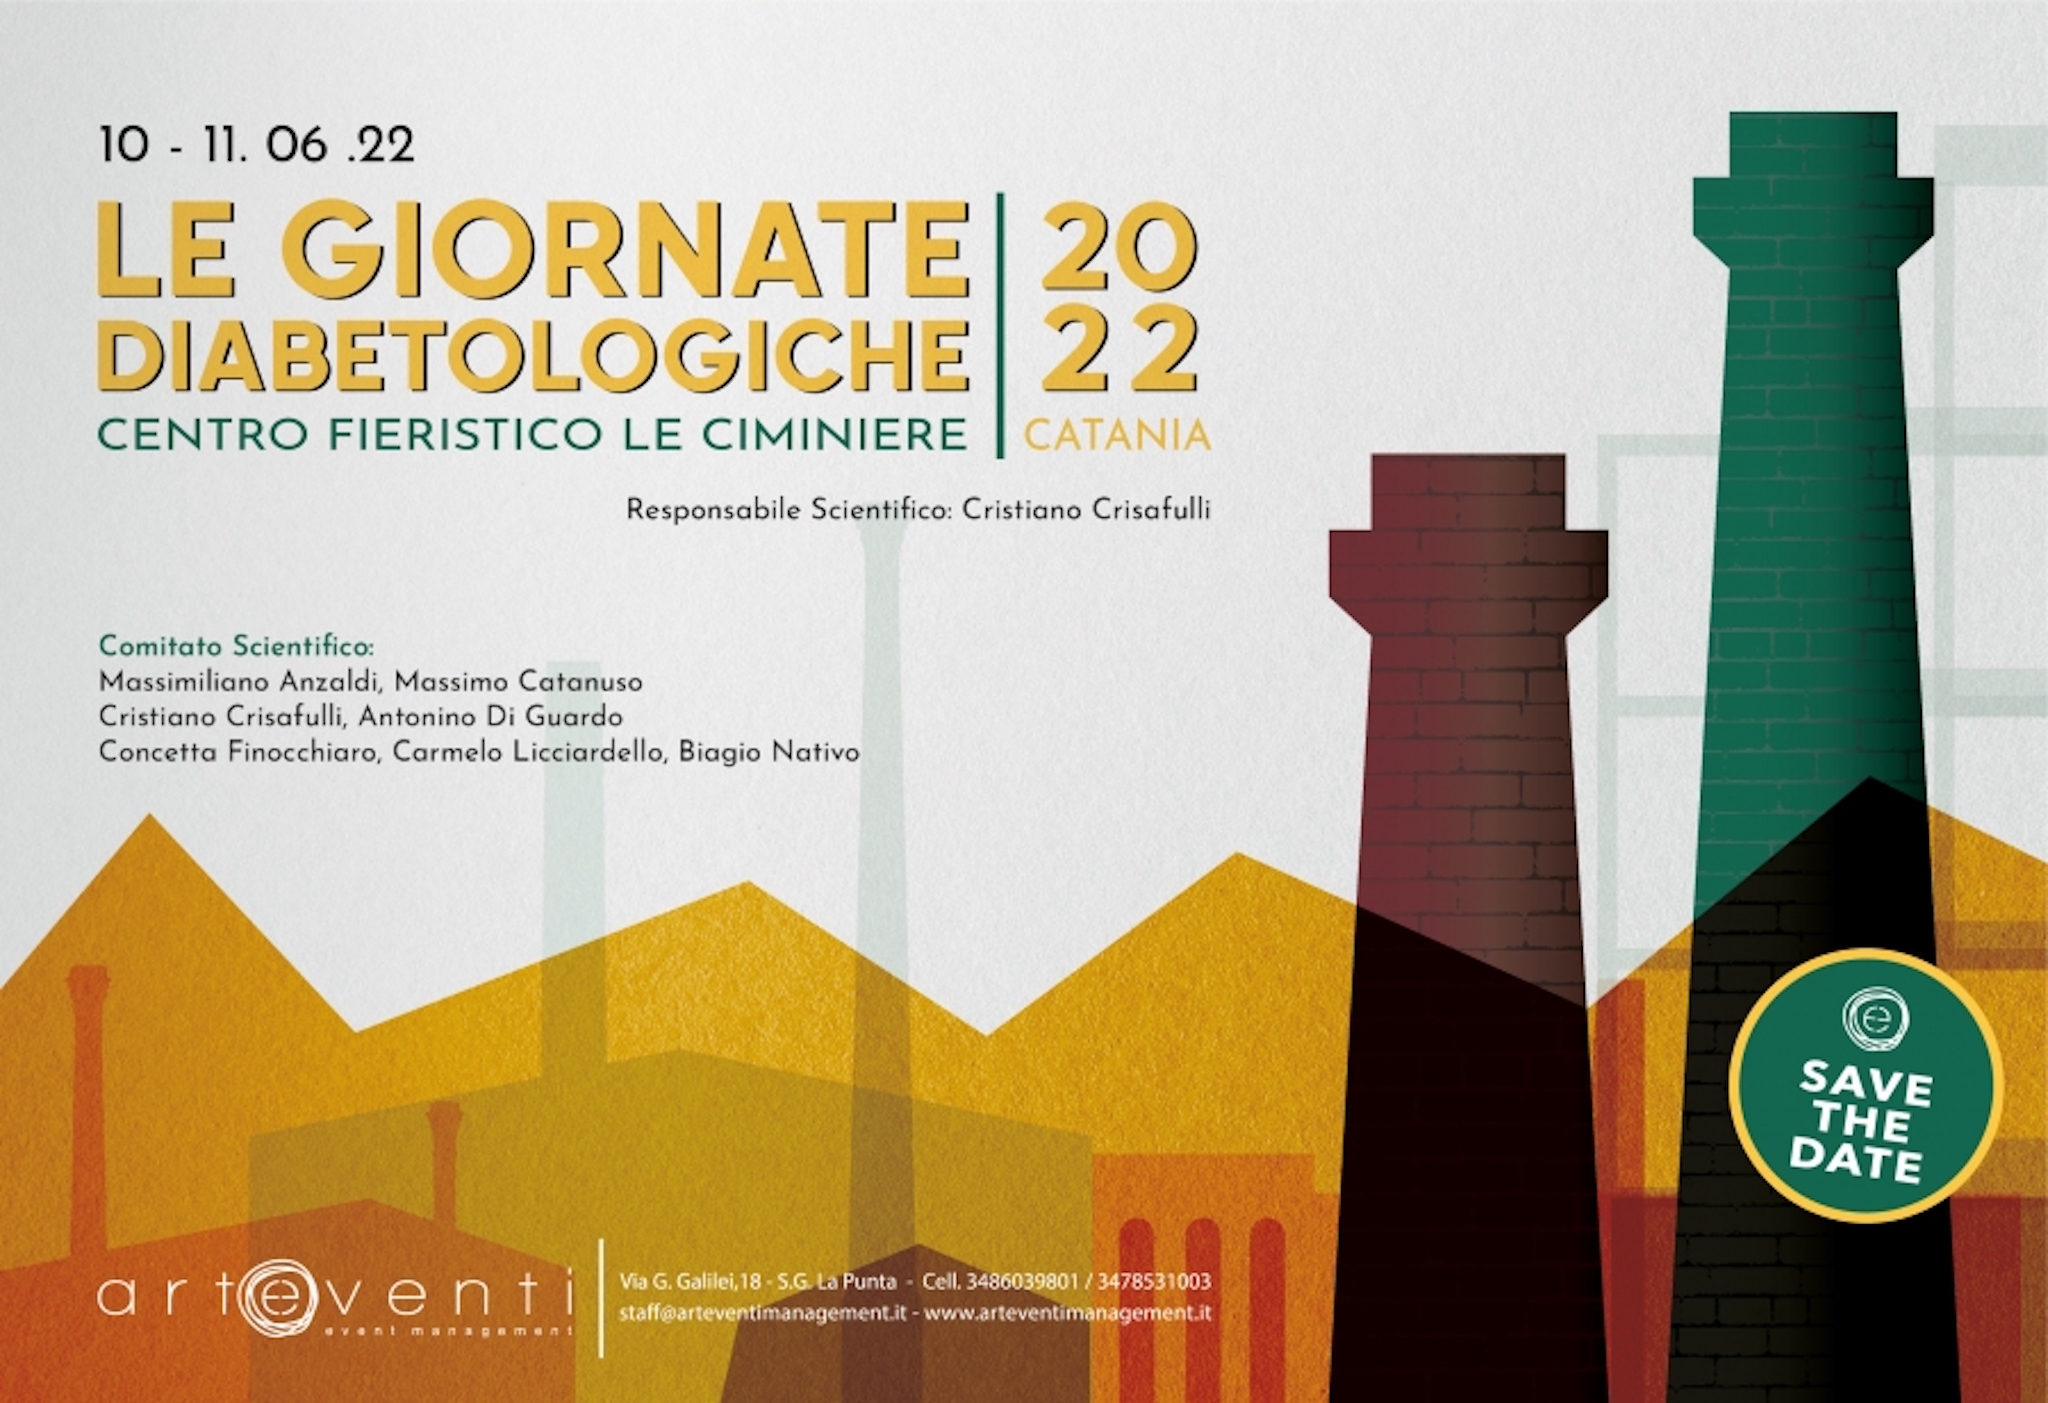 Le giornate diabetologiche - 10-11/06/2022 - Centro fieristico Le Ciminiere - Catania 